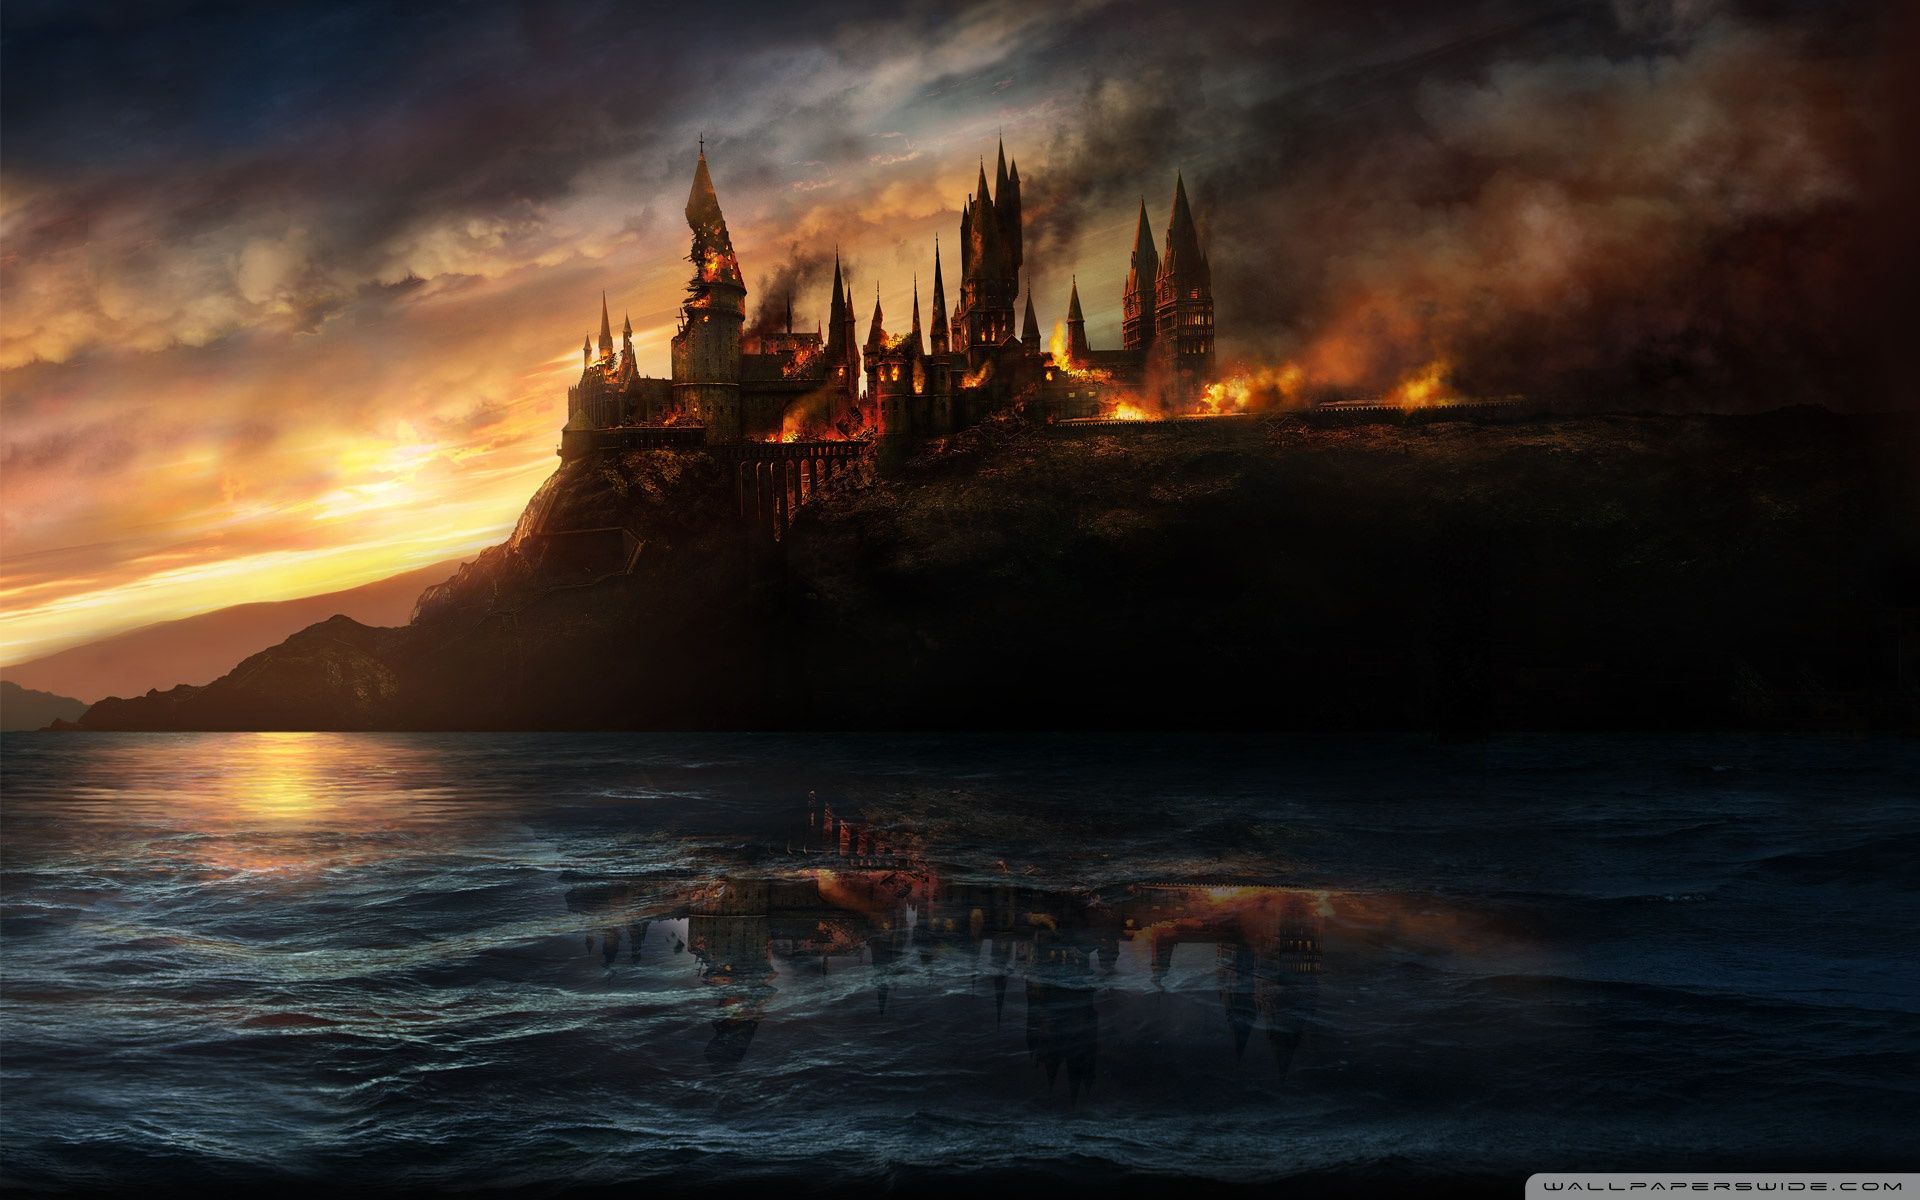 Gói tải về miễn phí ảnh nền máy tính Harry Potter đầy màu sắc sẽ làm bạn chìm đắm vào thế giới phù thủy và sinh động nhất của Hogwarts. Mở ra và khám phá đồ họa đẹp mắt của những tác phẩm văn học kinh điển tại đây.